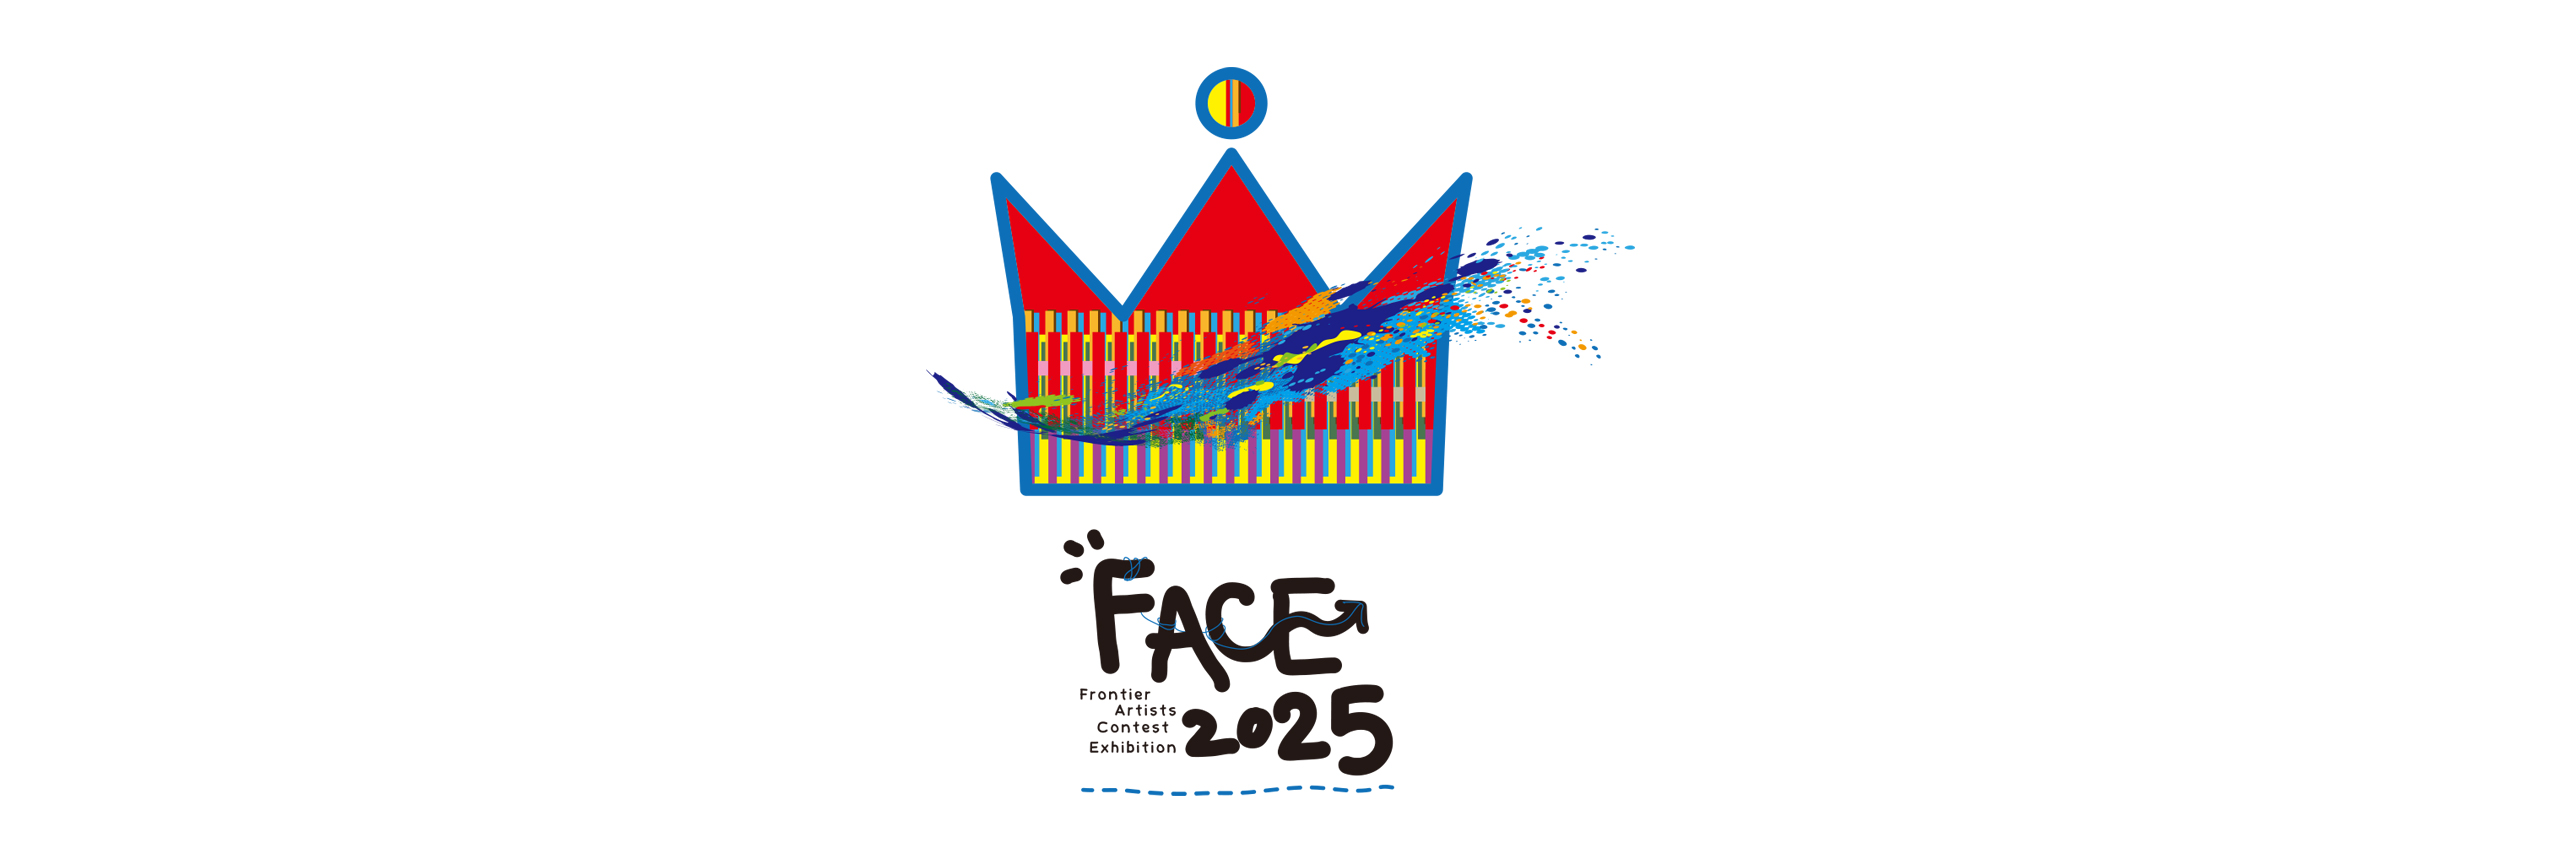 FACE展2025